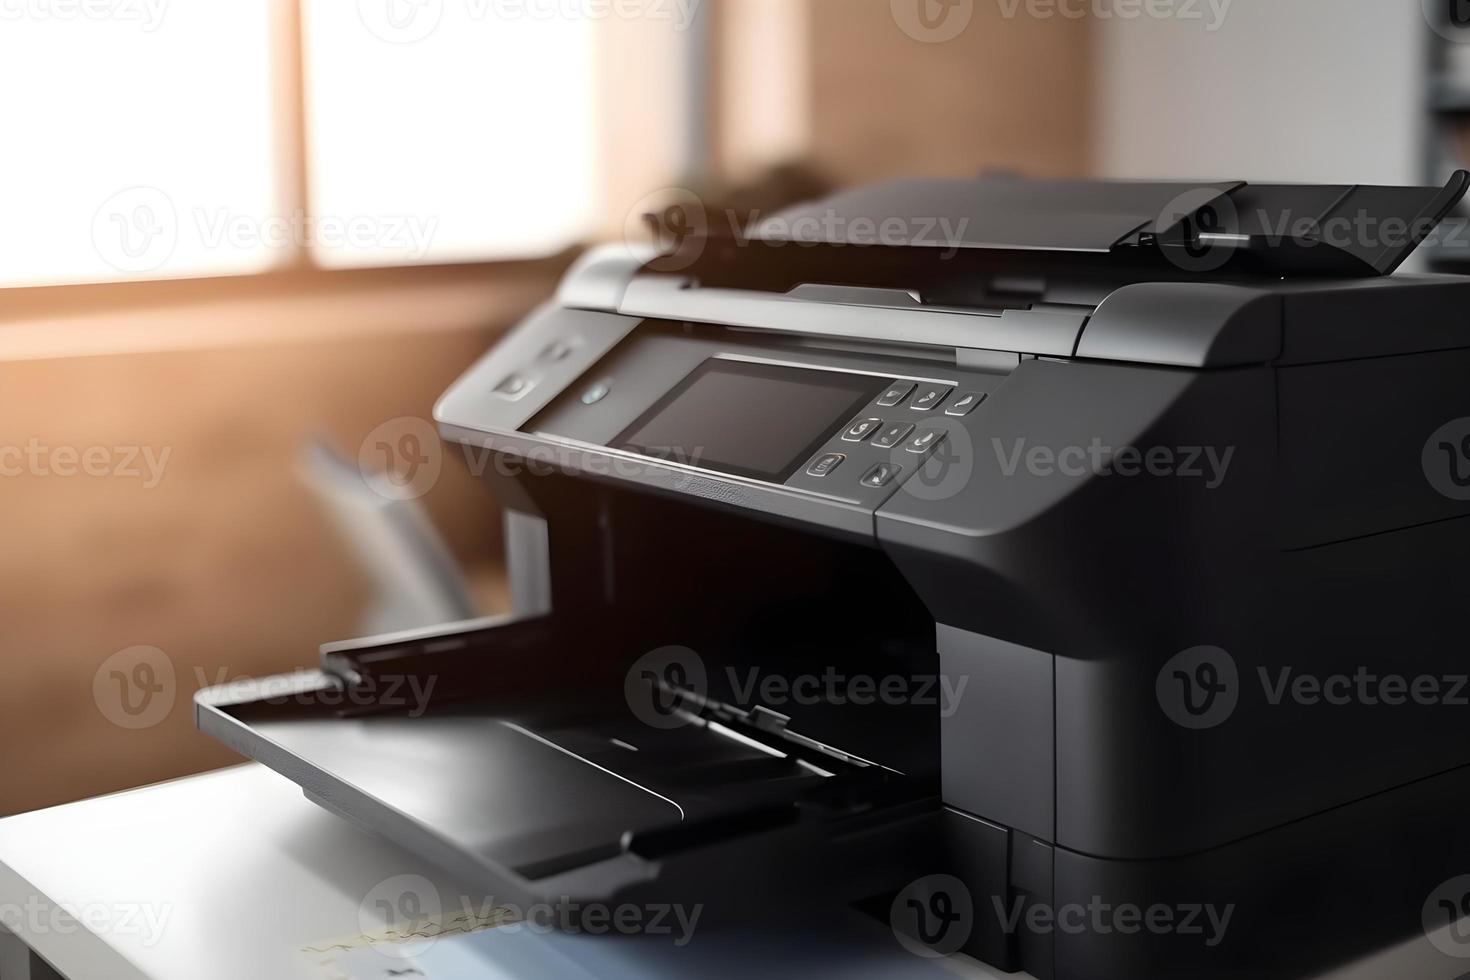 modern Drucker Kopierer Scanner Drucker im Büro Tabelle Geschäft Drucker foto